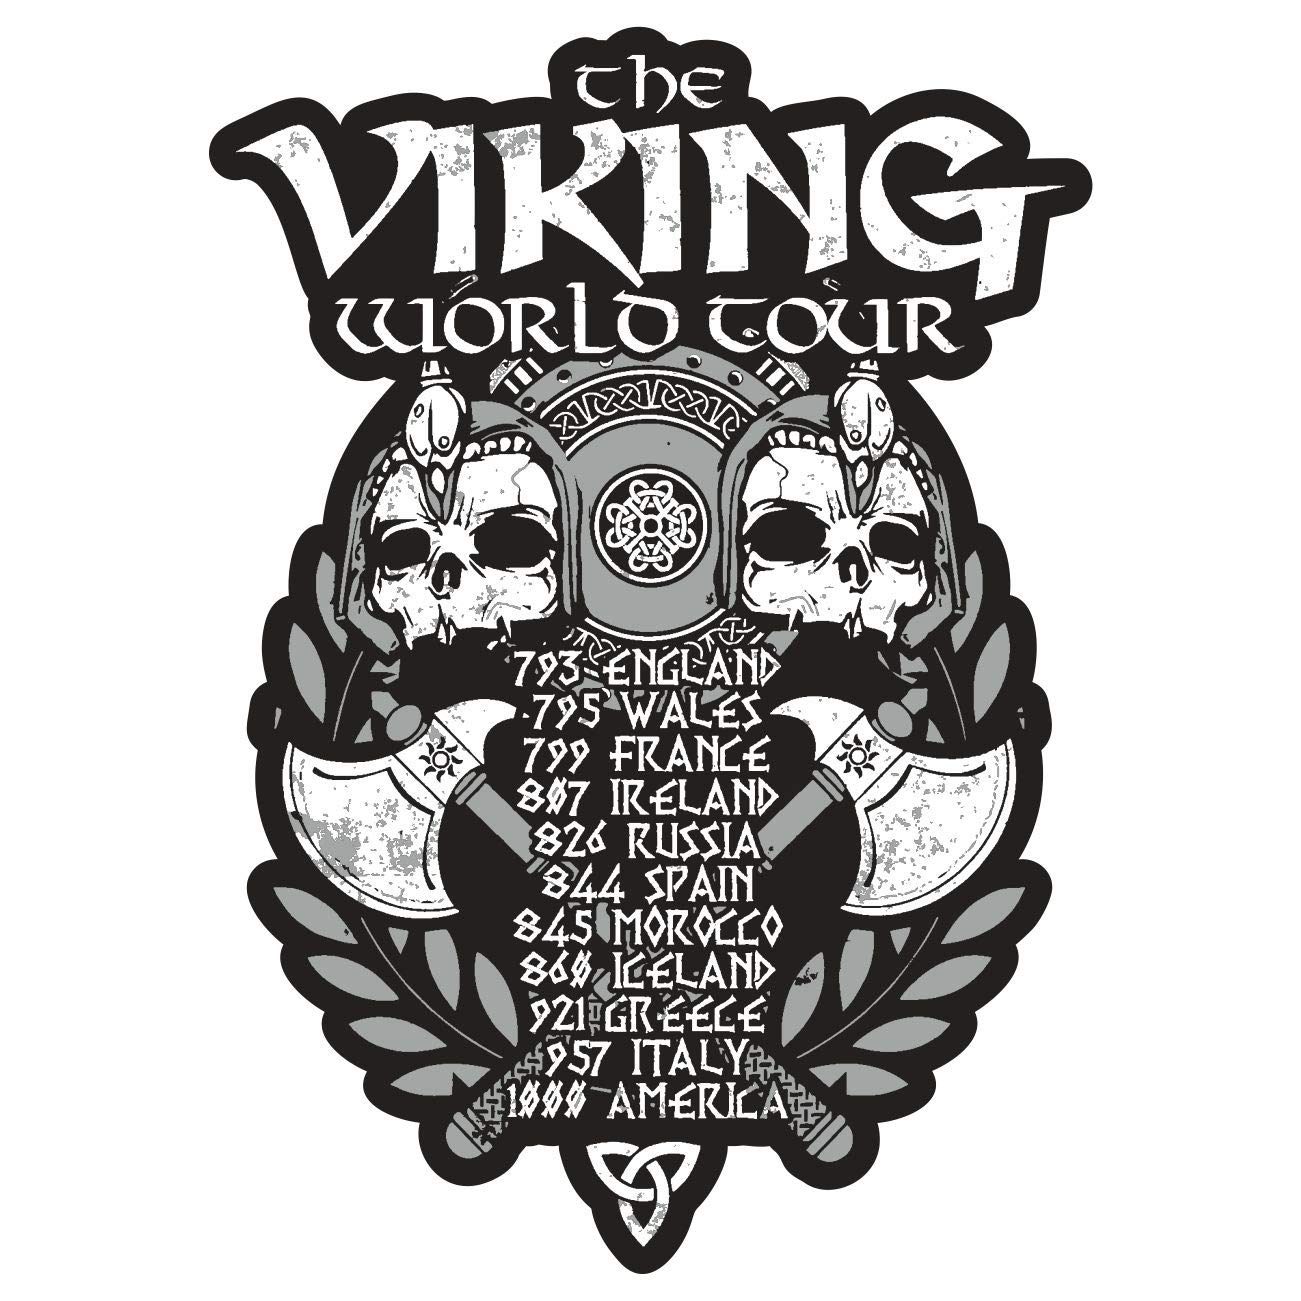 Aufkleber Wetterfest aussen Viking World Tour Wikinger raubzüge raubzug von SONS OF ODIN